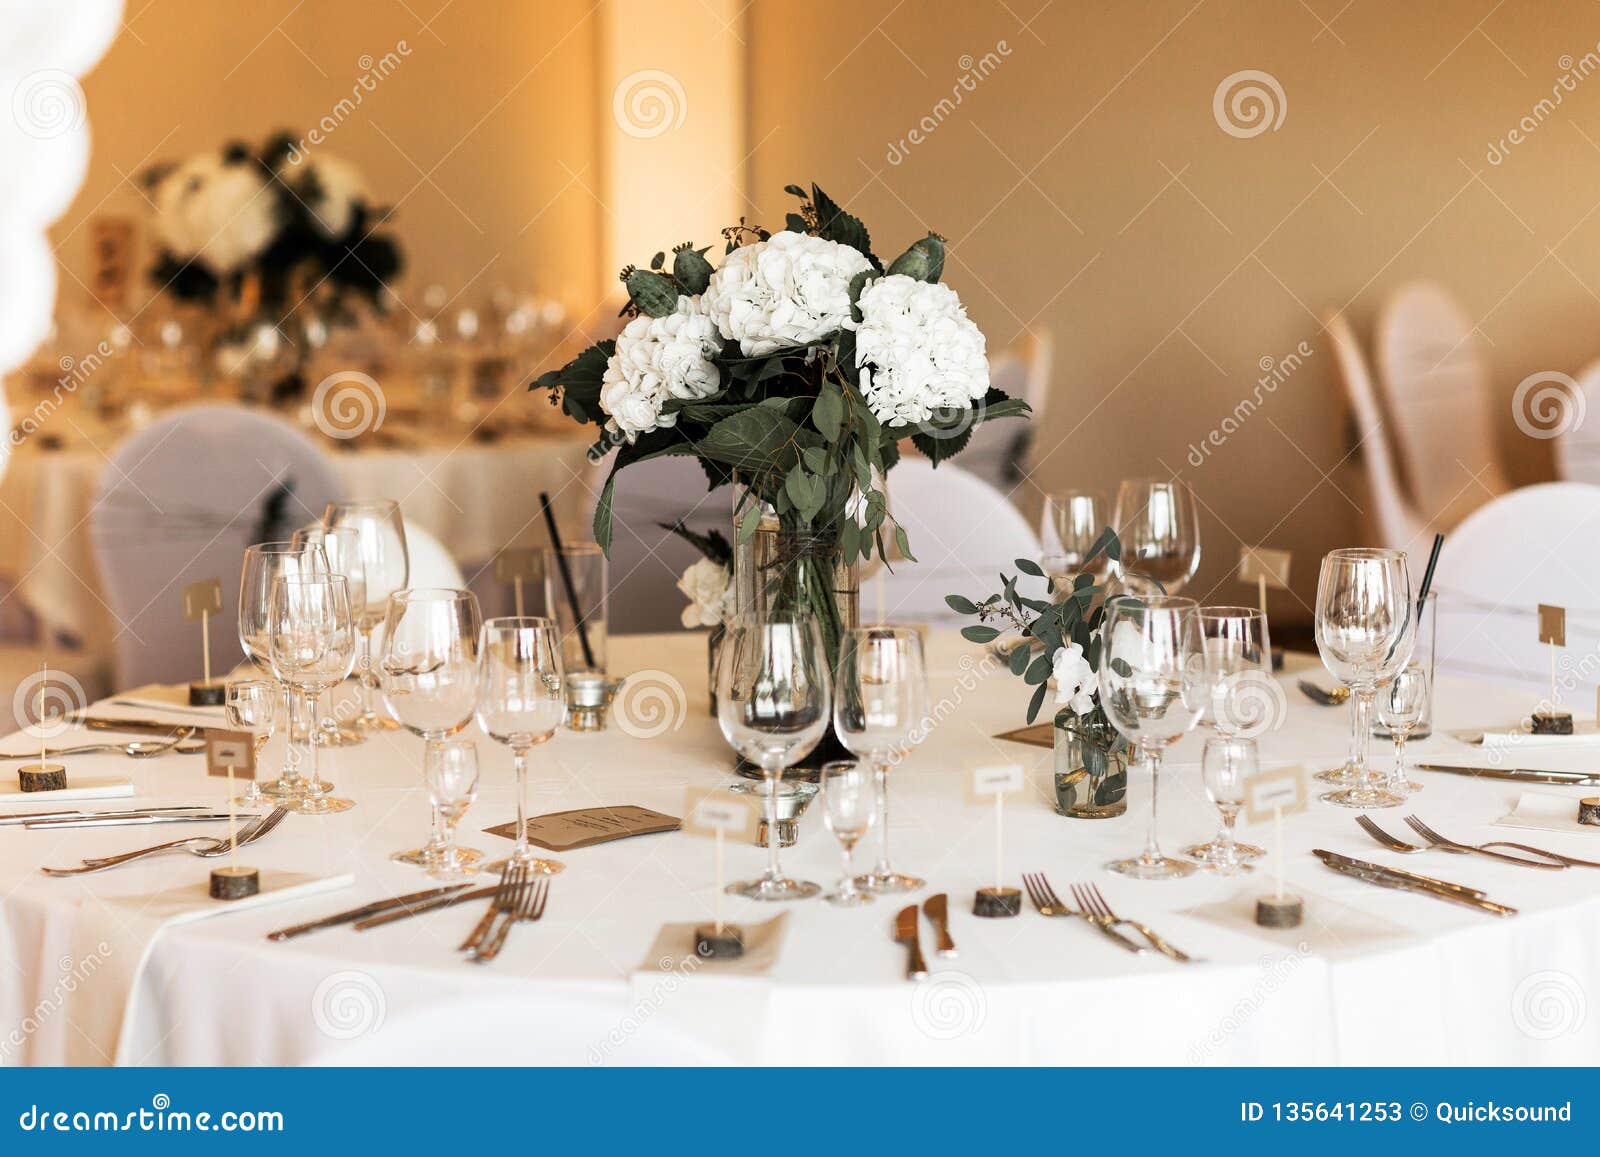 Round Wedding Table Set Stock Image Image Of Decor 135641253